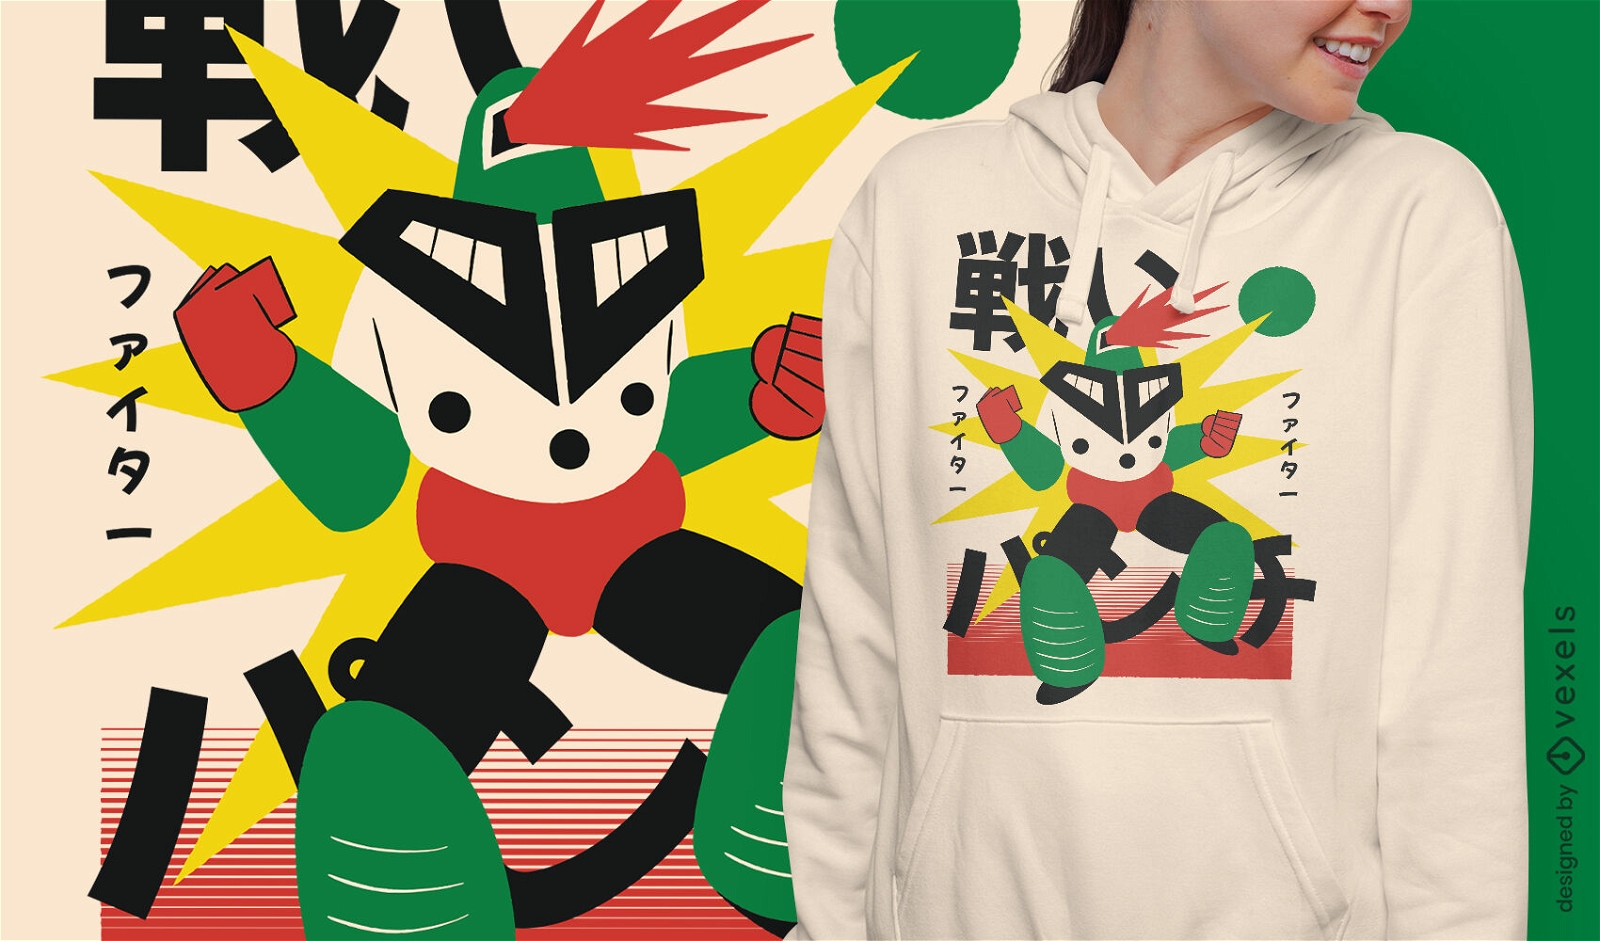 Japanisches Roboter-Feuerkrieger-T-Shirt-Design